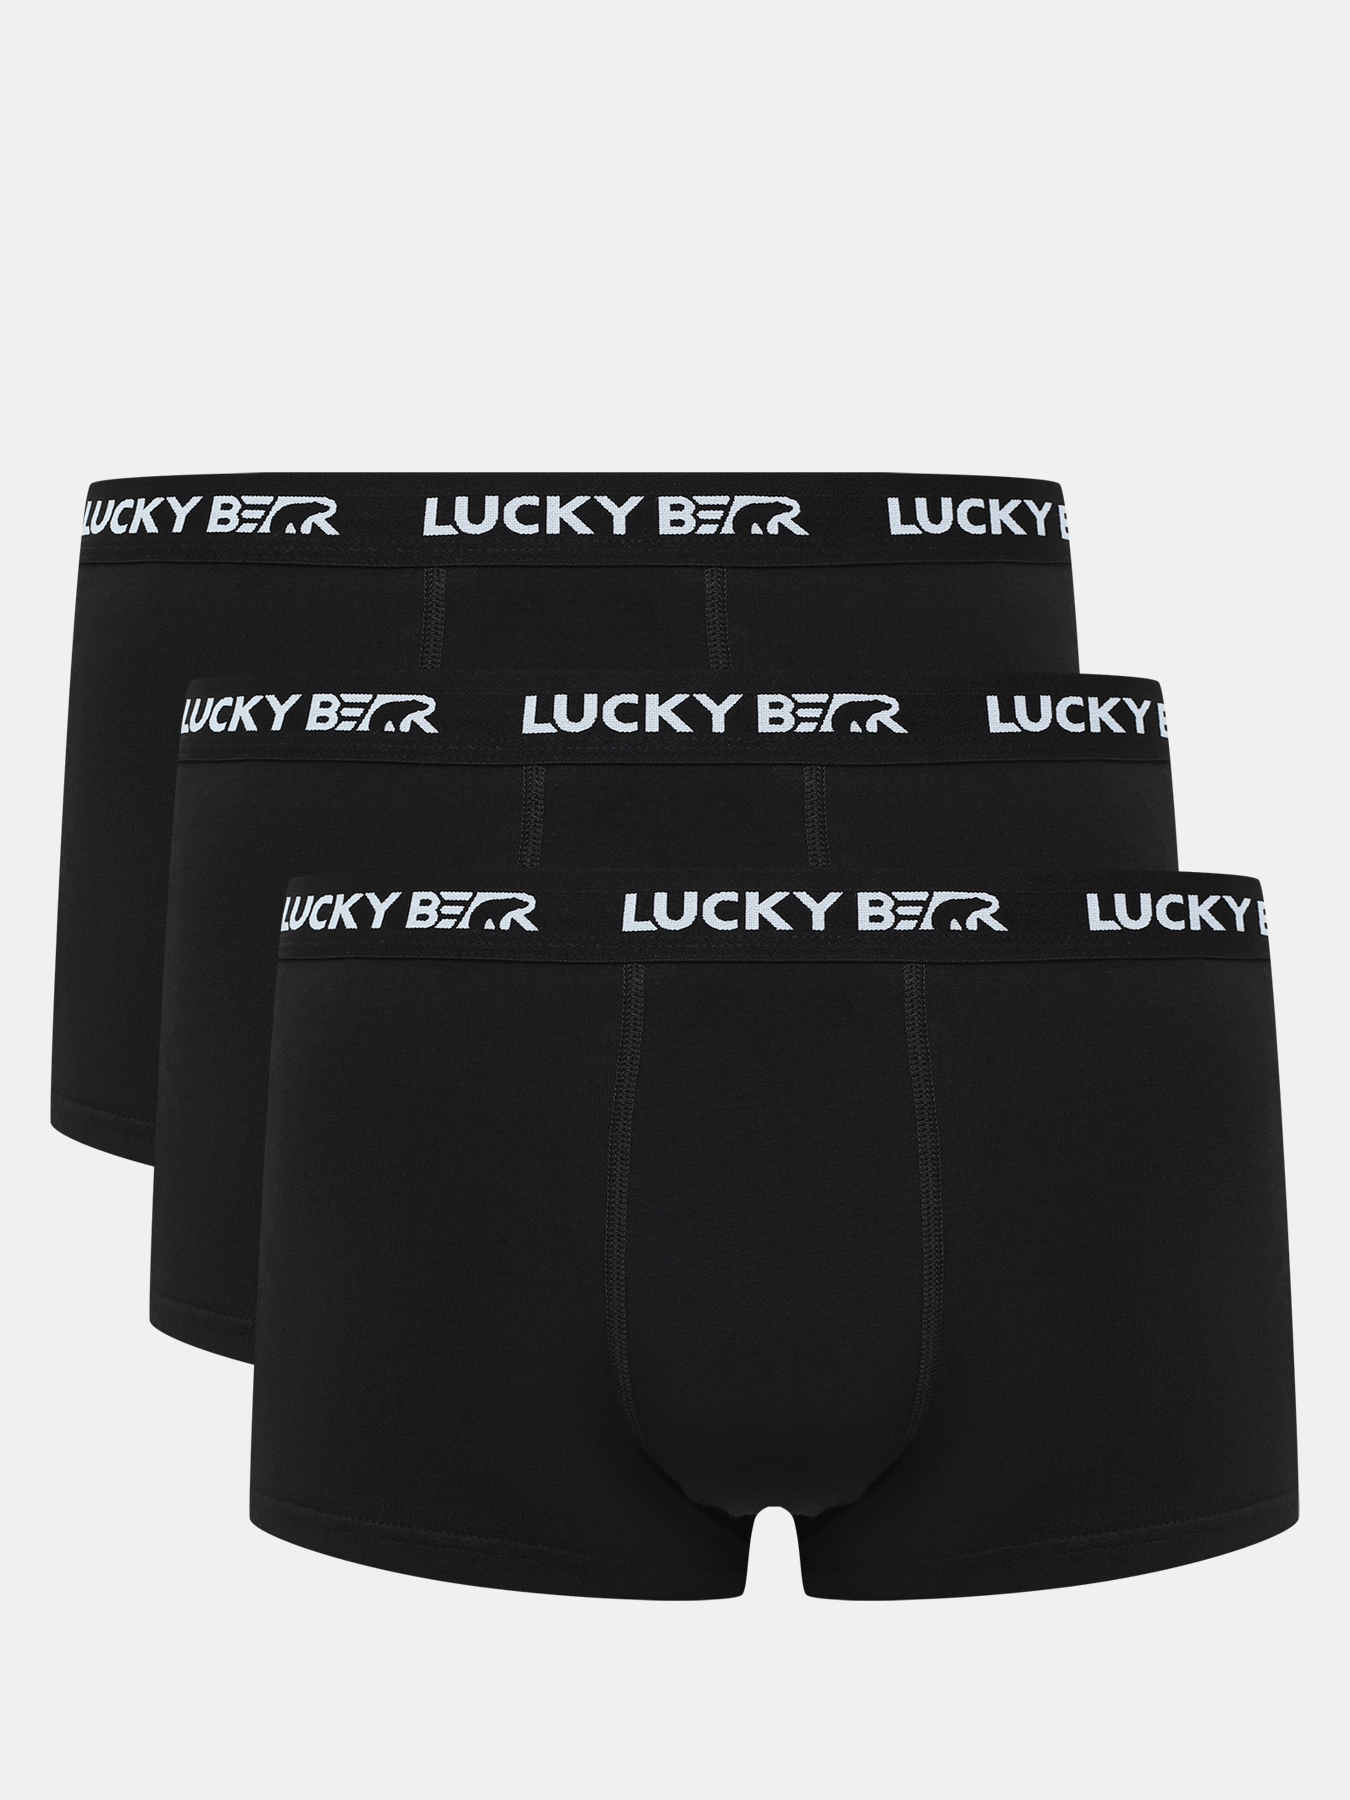 Комплект трусов мужских Lucky Bear 450596 черных S